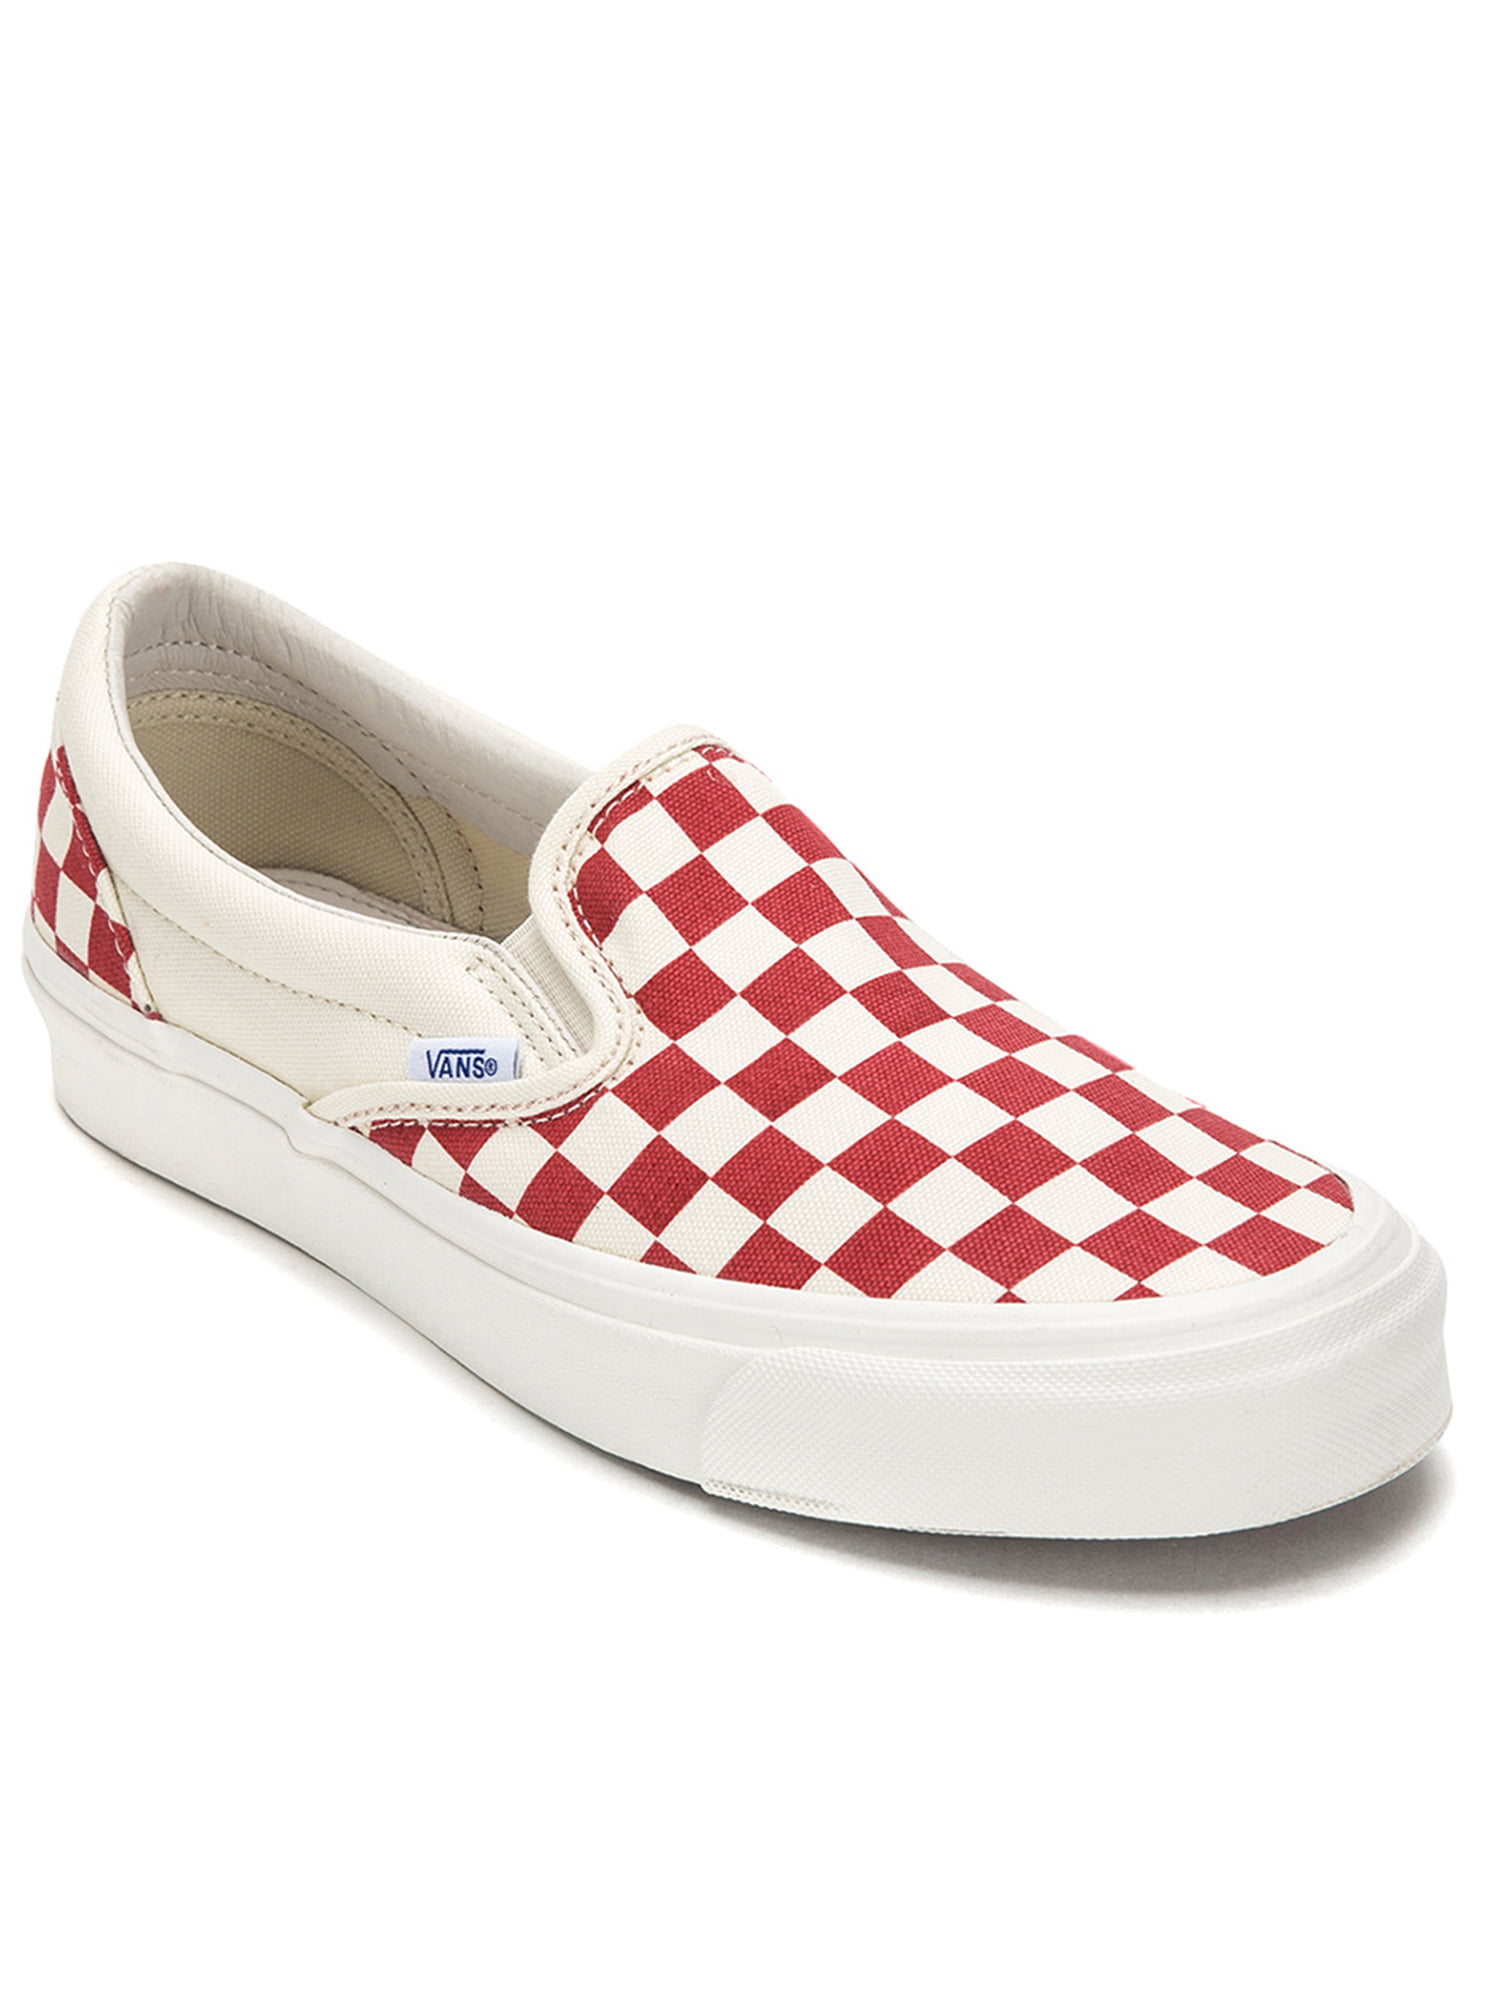 modtagende arve vedholdende vans og classic slip-on lx sneakers vn0a32qnp4h red & white checkerboard -  Walmart.com